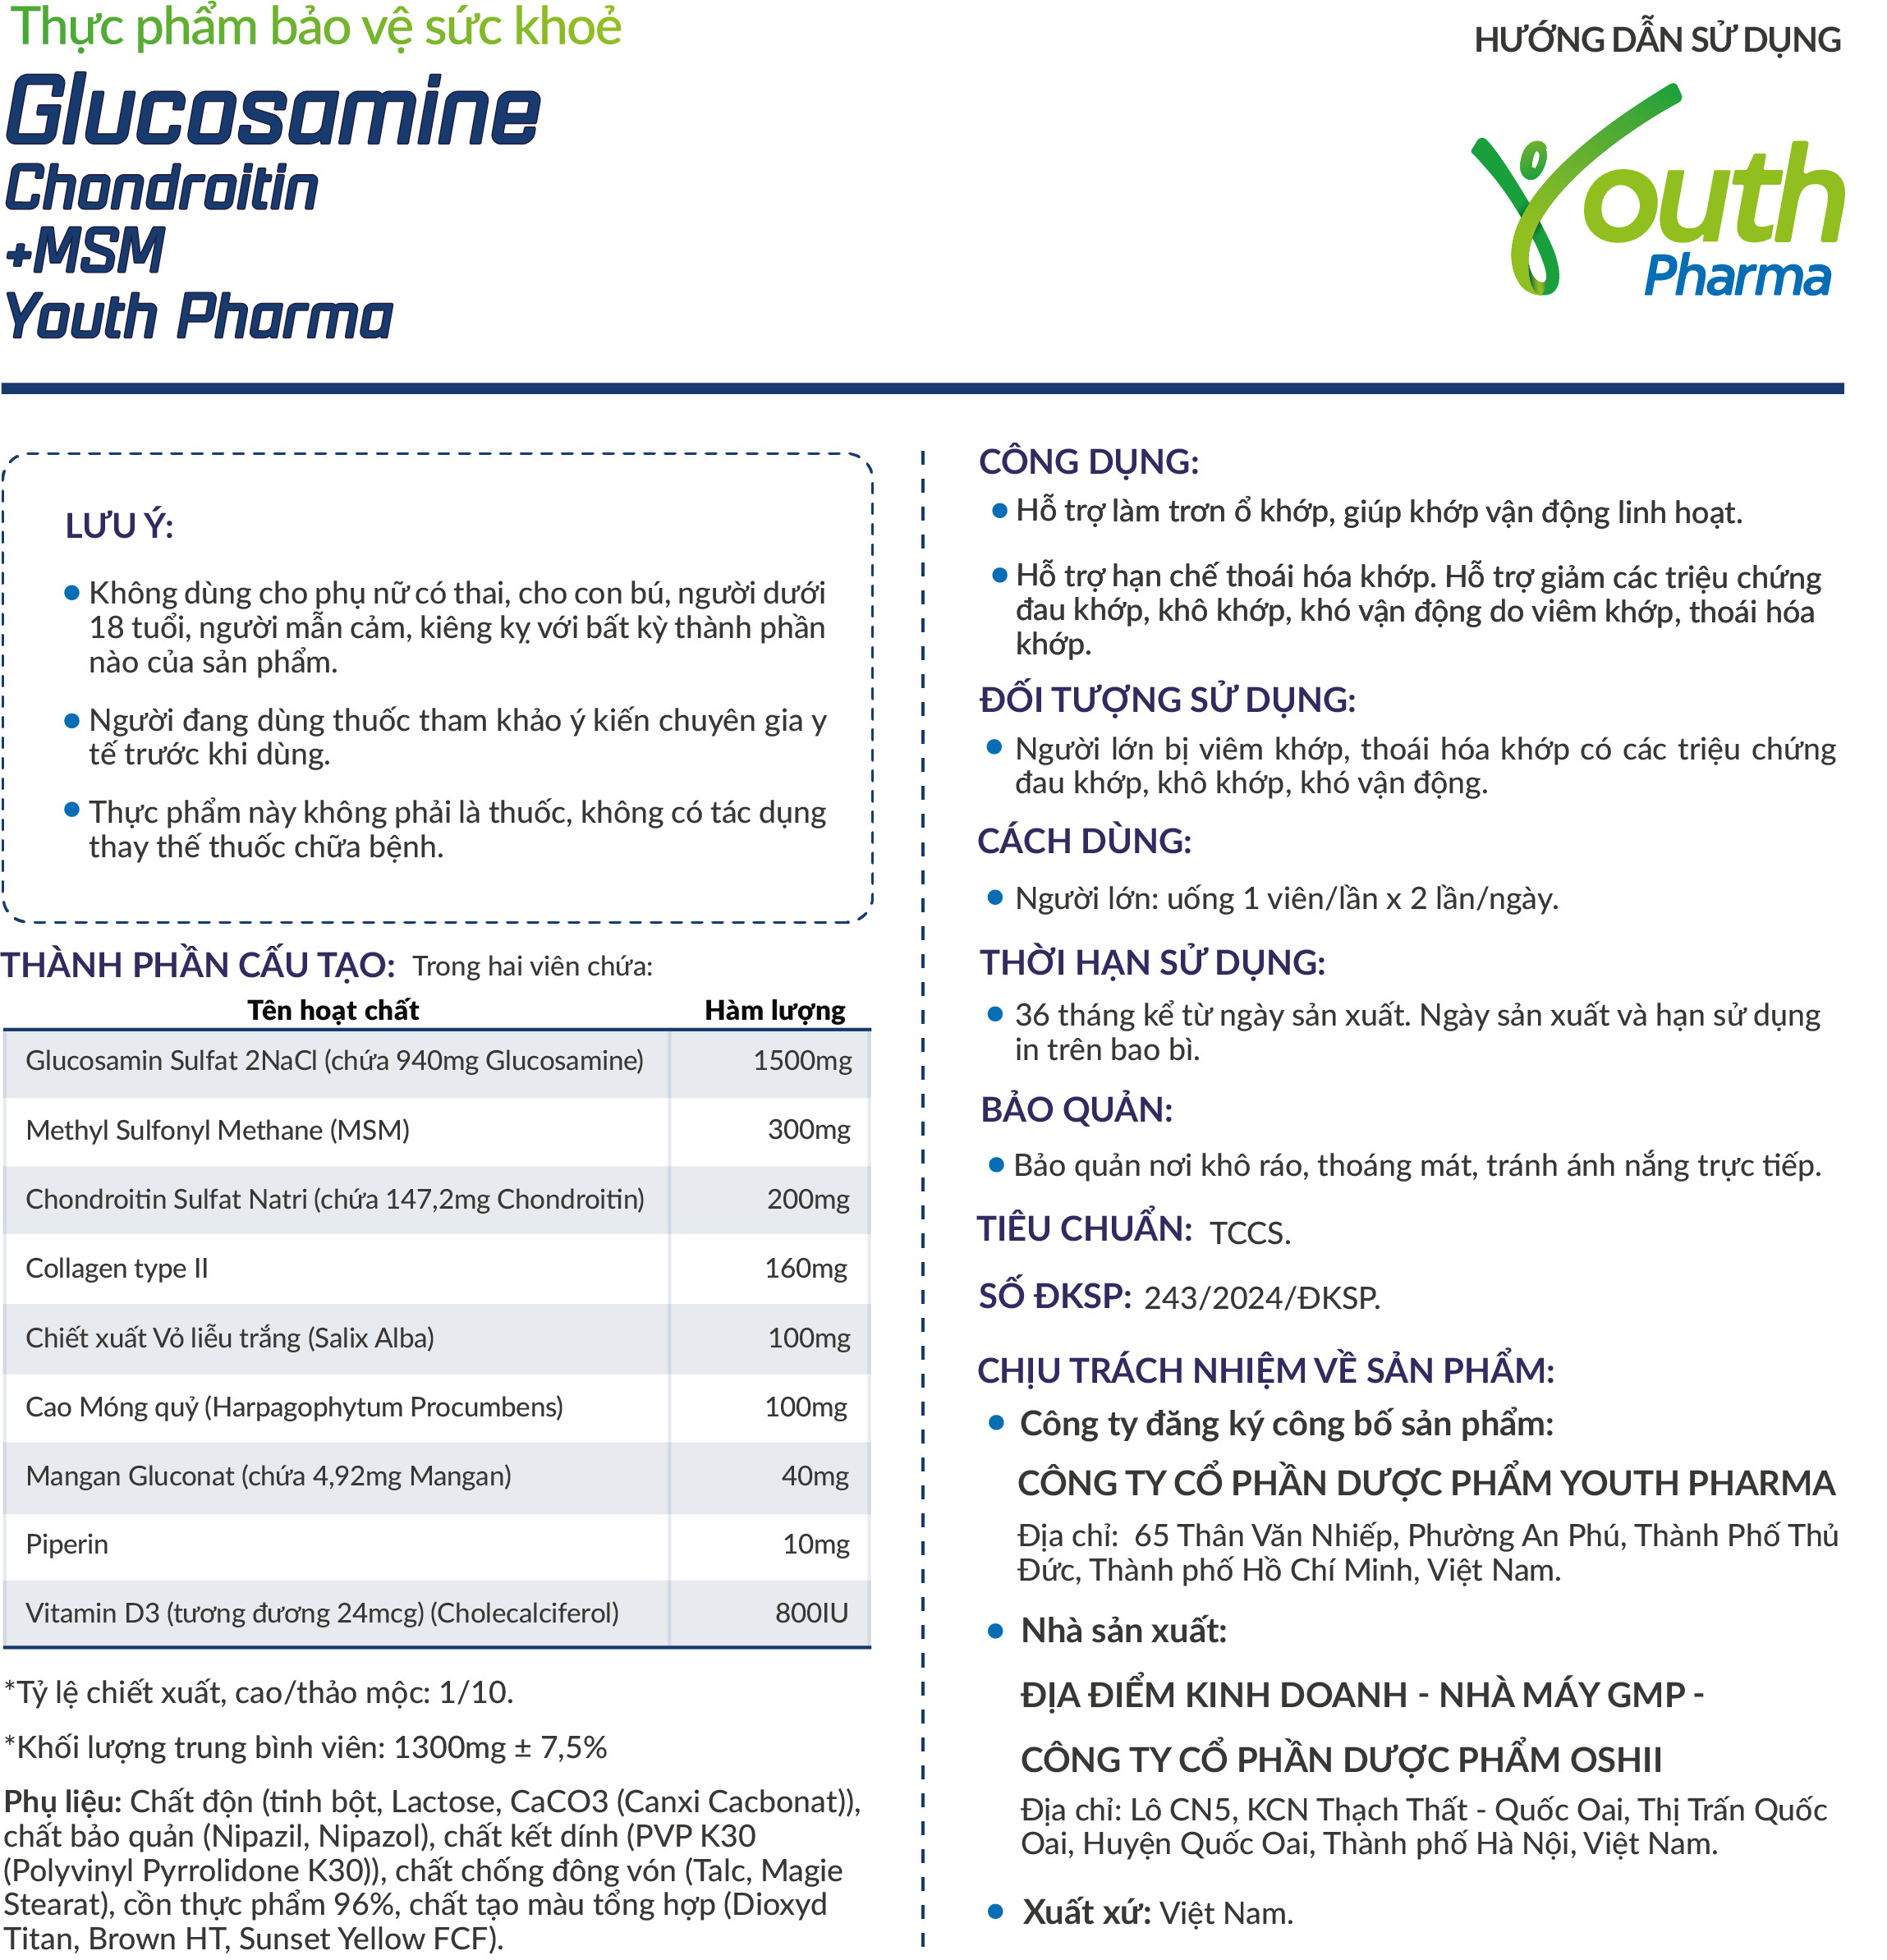 Viên Uống Glucosamine Chondroitin +MSM Youth Pharma Hỗ Trợ Làm Trơn Ổ Khớp, Giúp Khớp Vận Động Linh Hoạt. Hộp 30 Viên